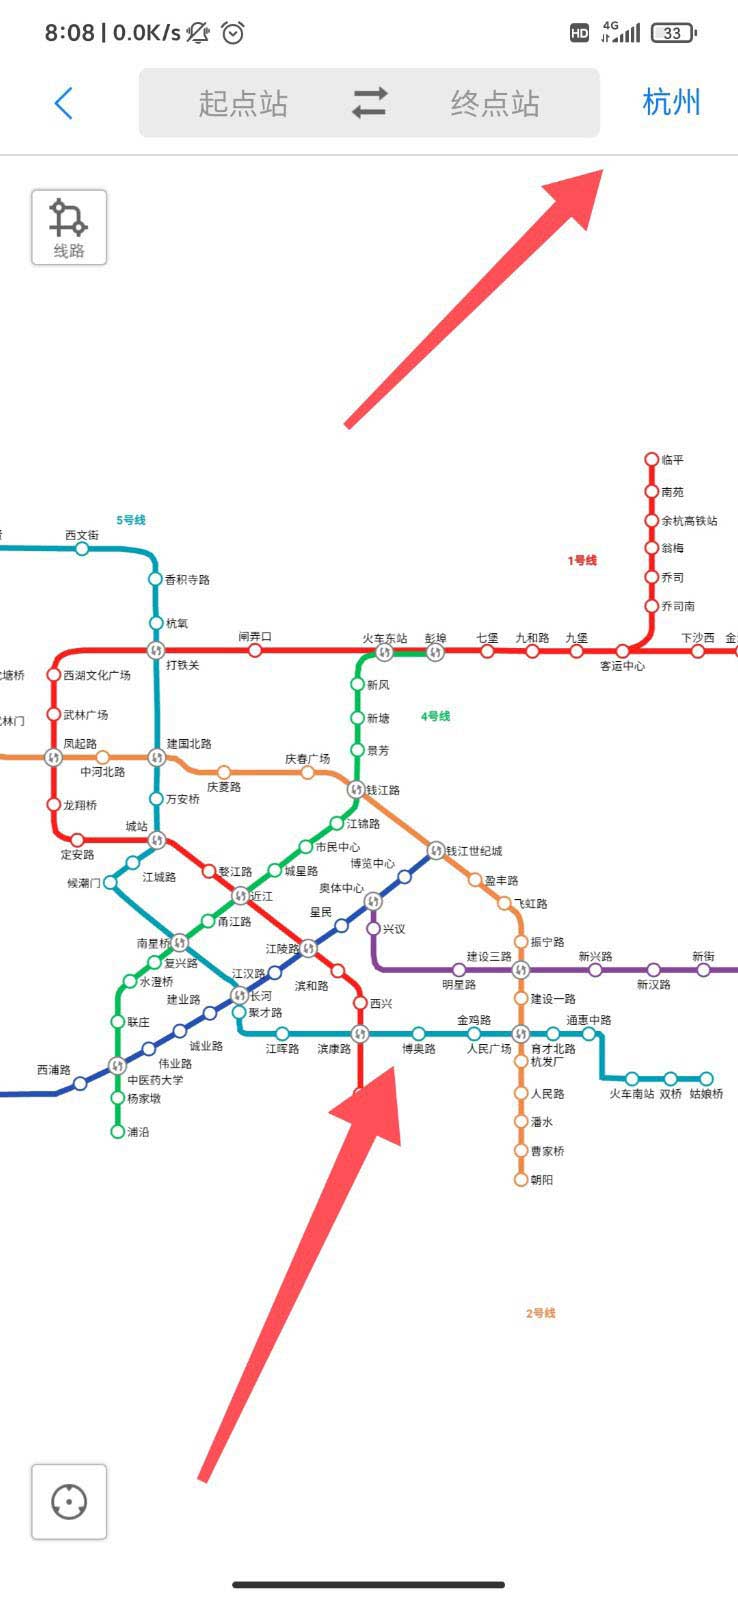 腾讯地图怎么看地铁全图 腾讯地图查看不同城市的地铁线路图的技巧